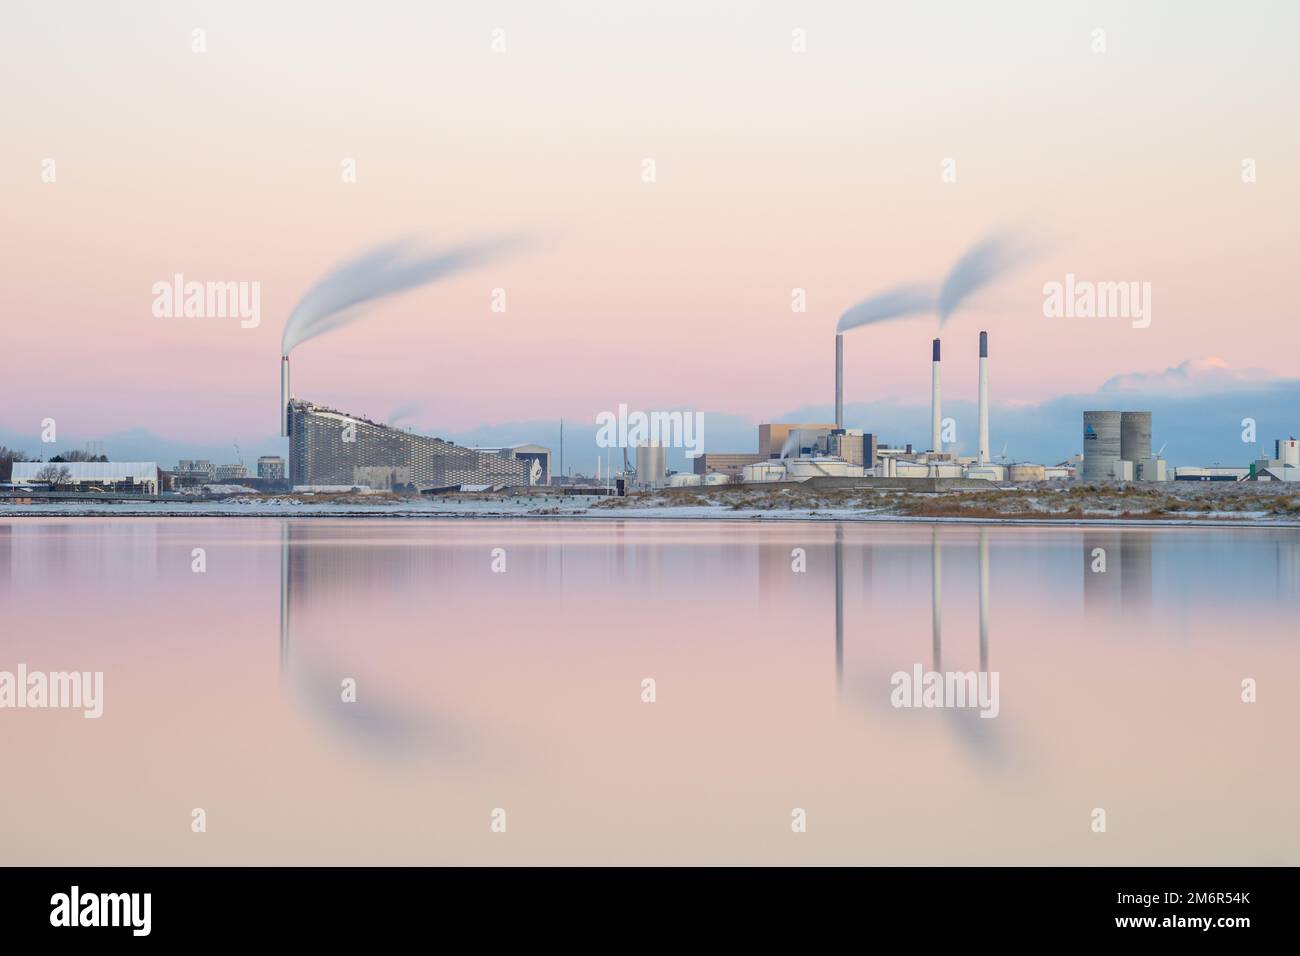 Impianti industriali ad Amager, Copenhagen, Danimarca. Amager Bakke, a sinistra, è un impianto combinato di smaltimento dell'energia e di ricreazione con pista da sci. Foto Stock